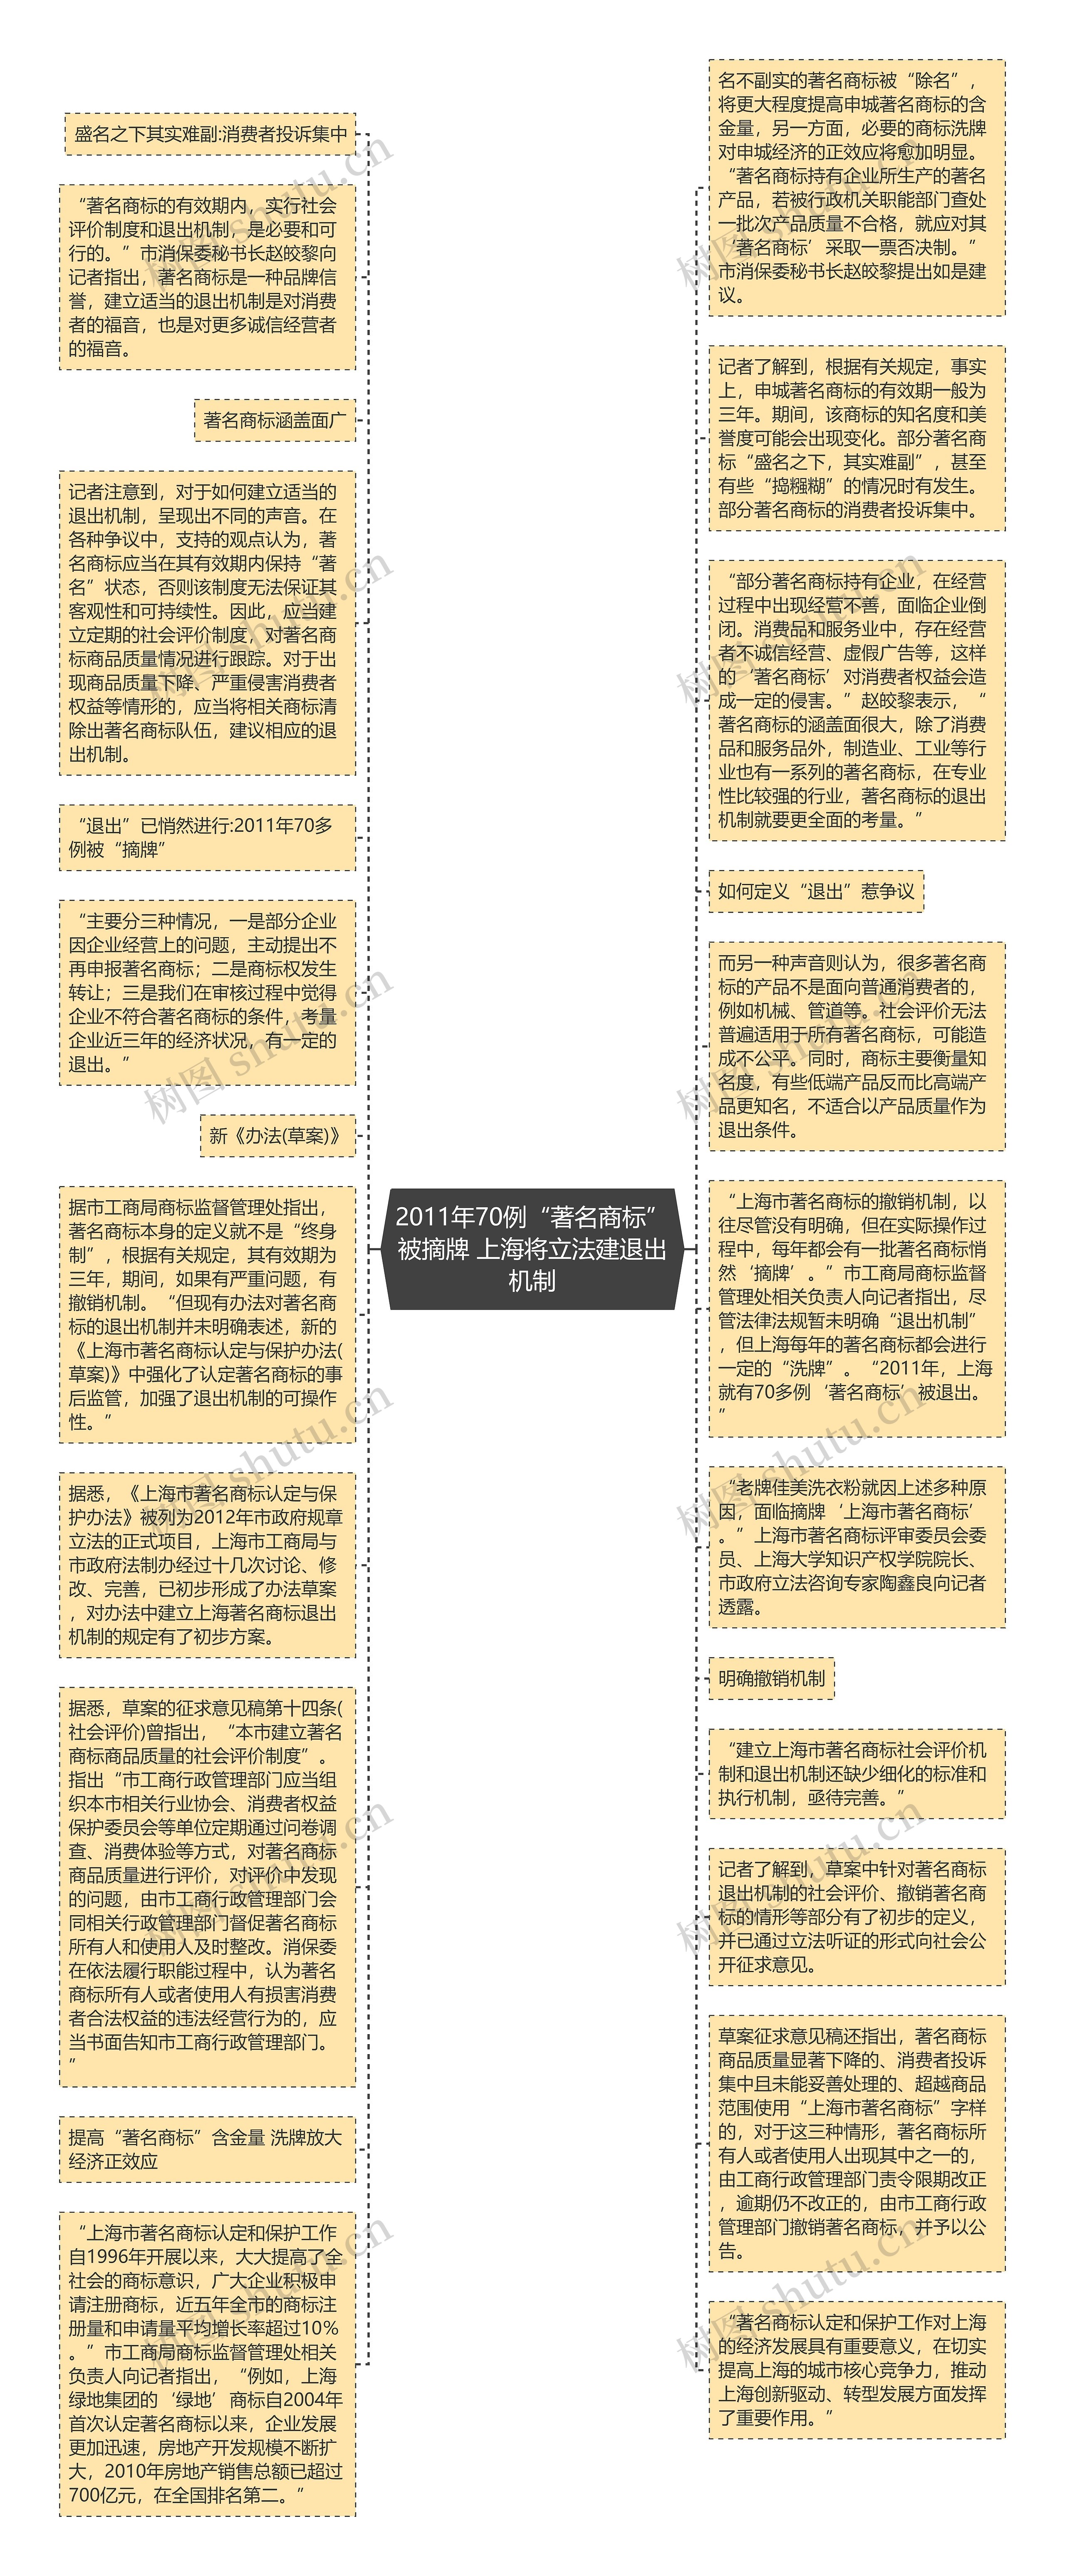 2011年70例“著名商标”被摘牌 上海将立法建退出机制思维导图